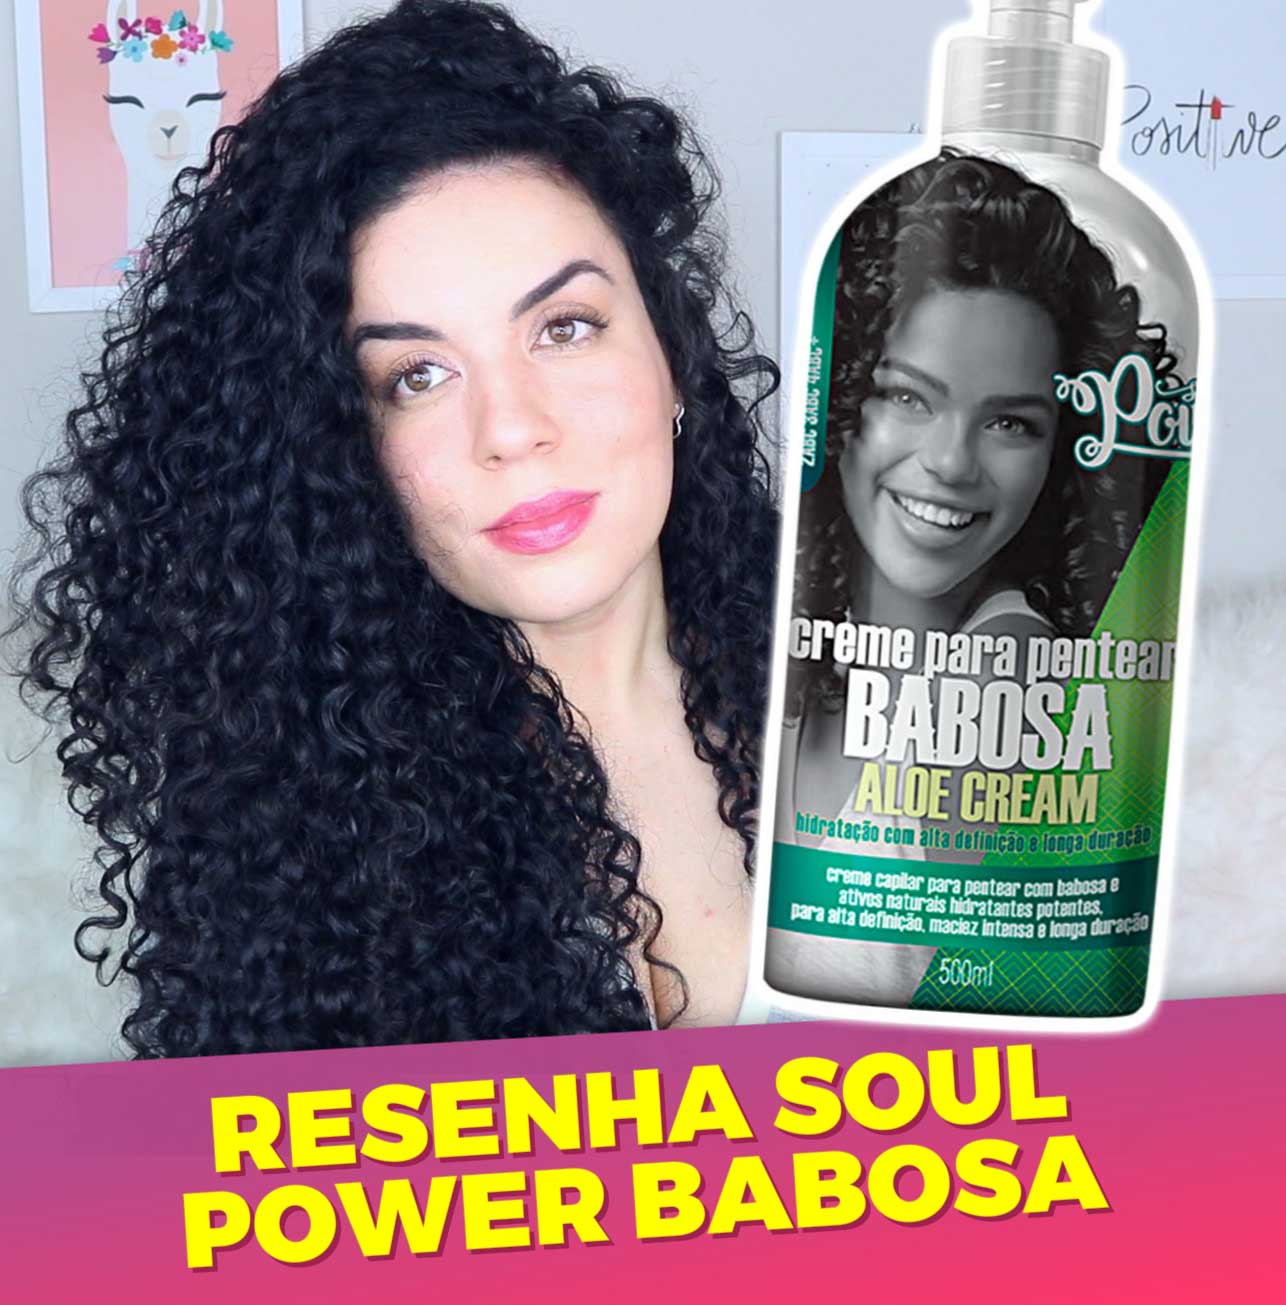 Resenha Soul Power Babosa